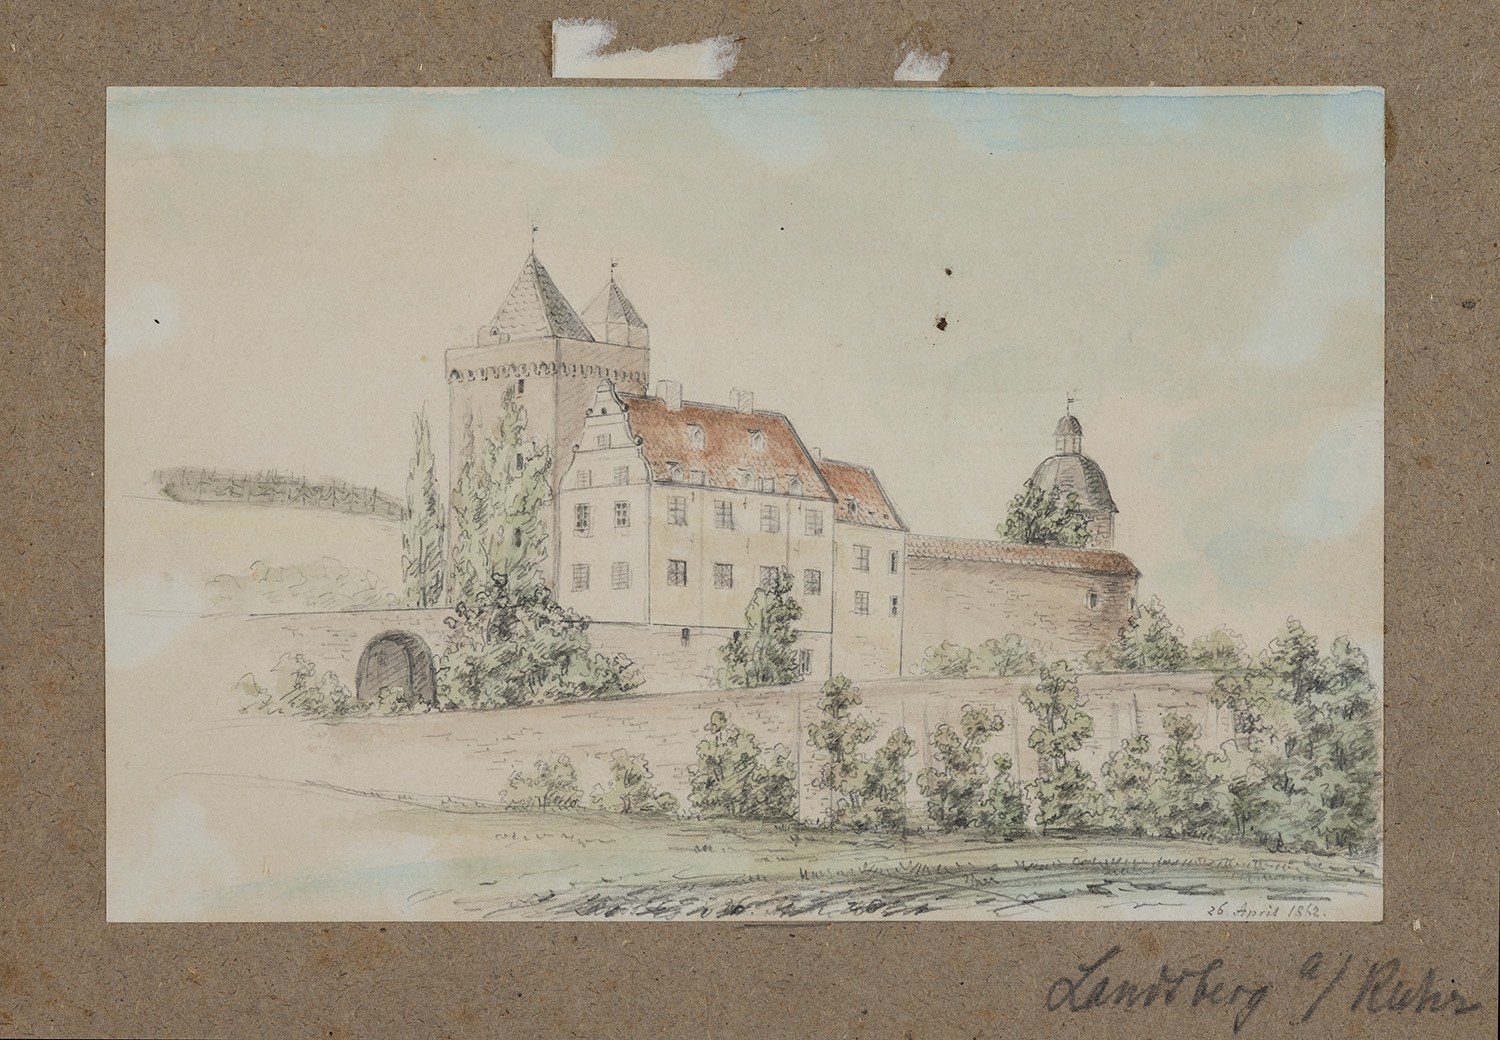 Landsberg/Ruhr (Stadt Ratingen, Nordrhein-Westfalen): Schloss Landsberg (Landesgeschichtliche Vereinigung für die Mark Brandenburg e.V., Archiv CC BY)